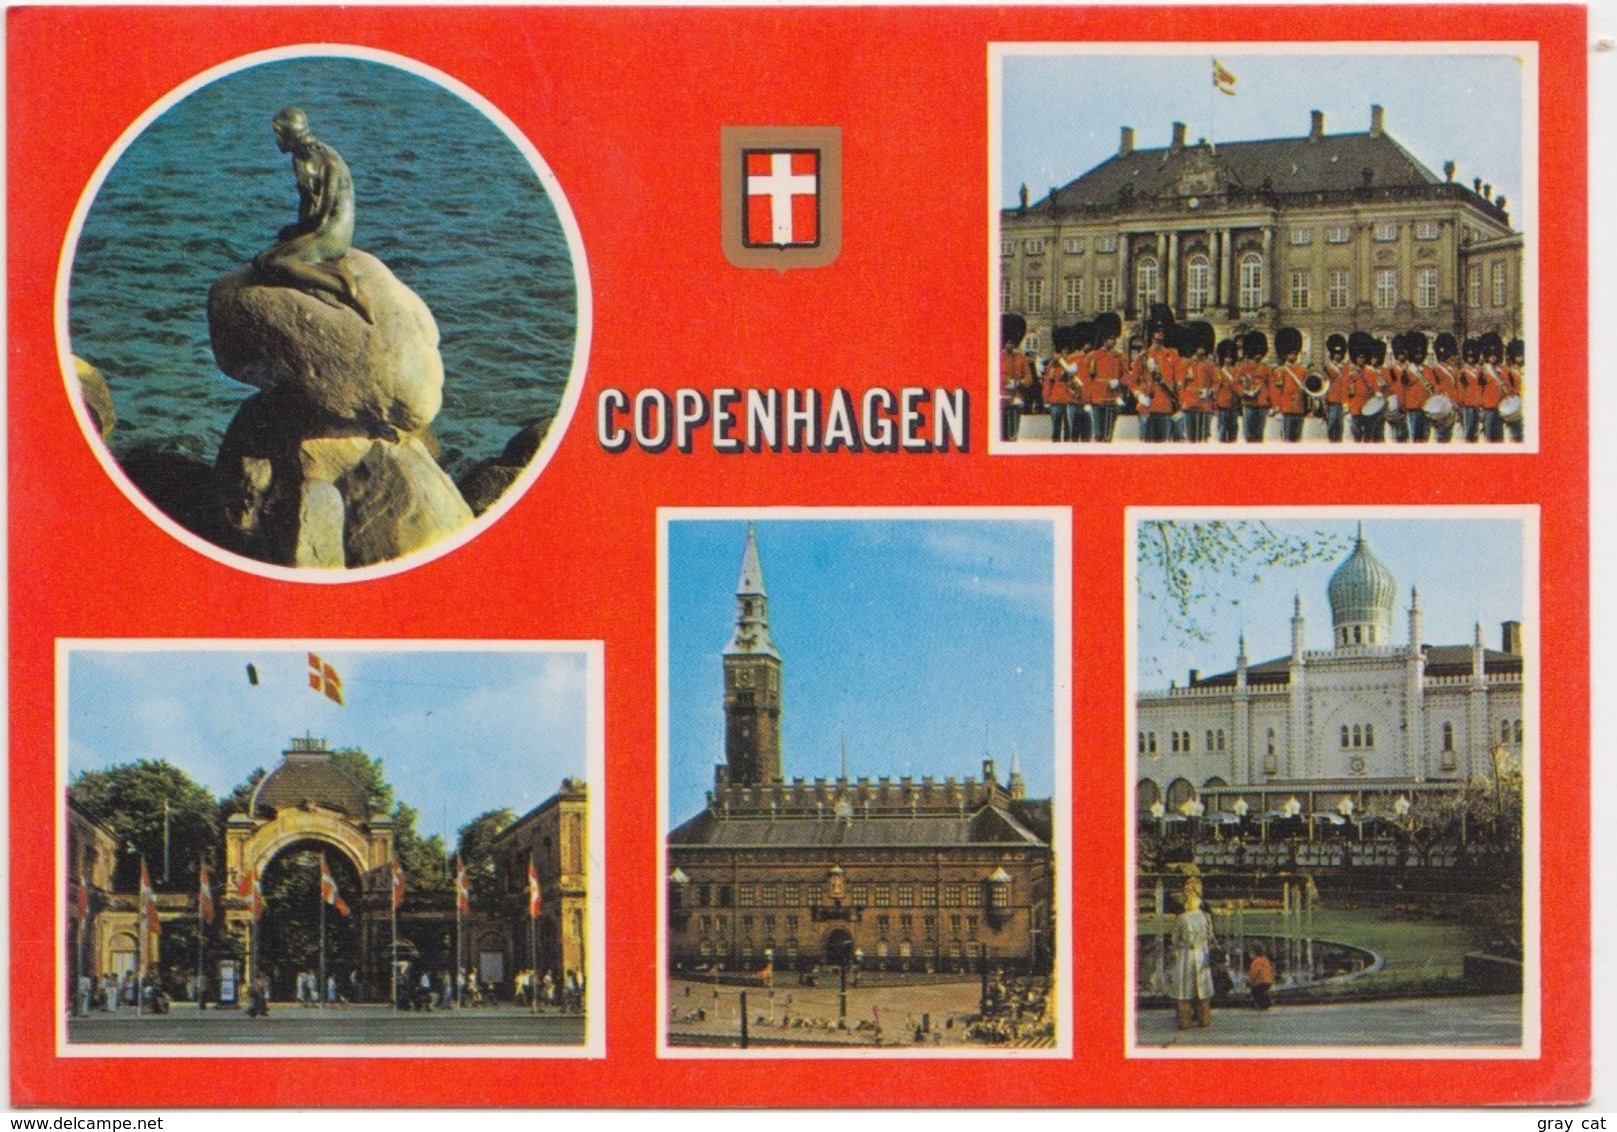 KOBENHAVN, COPENHAGEN, Denmark, 1984 Used Postcard [22182] - Denmark